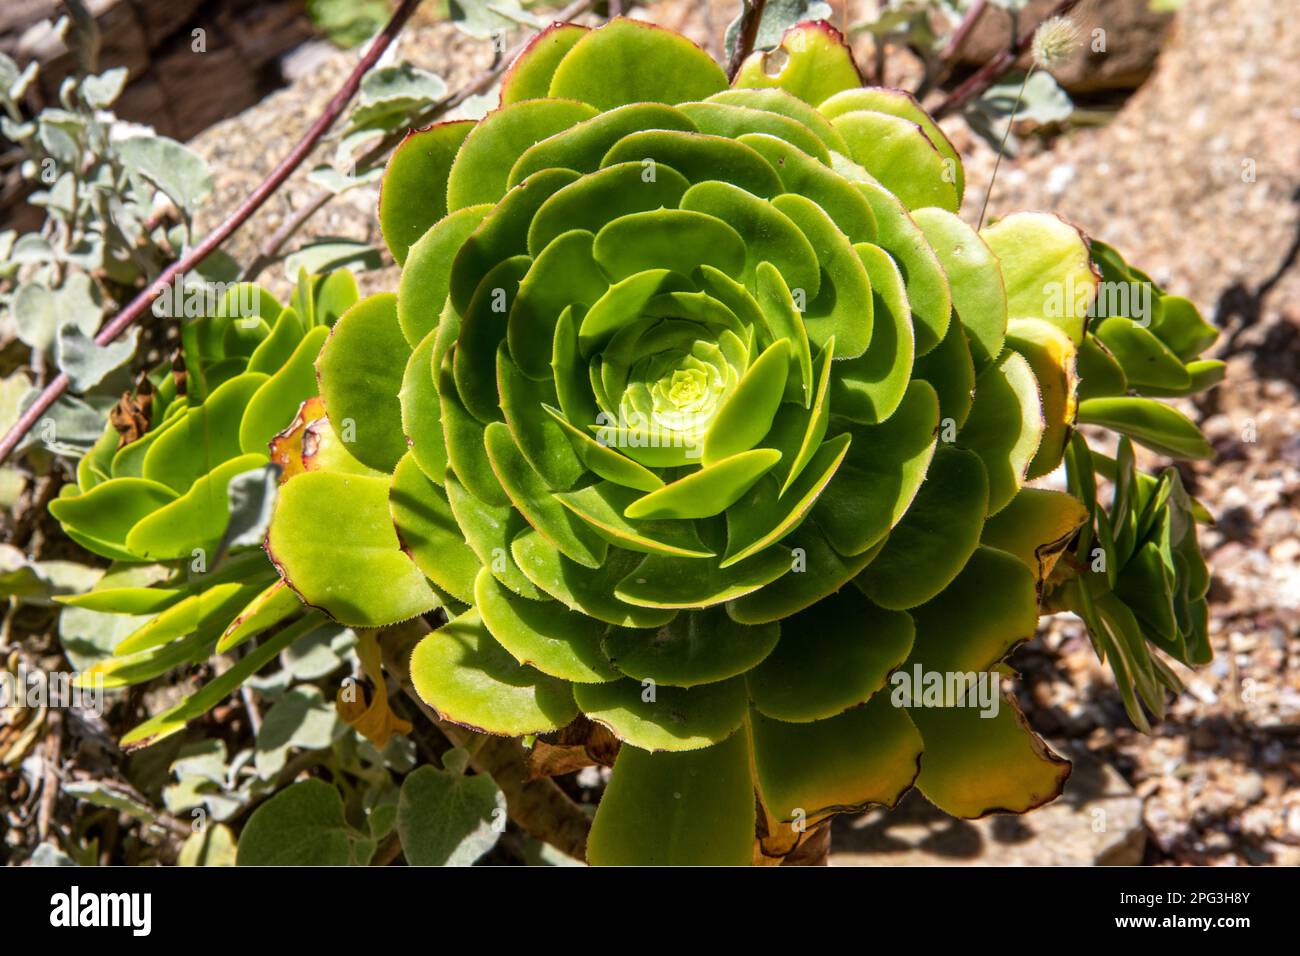 Aeonium canariense in close-up Stock Photo